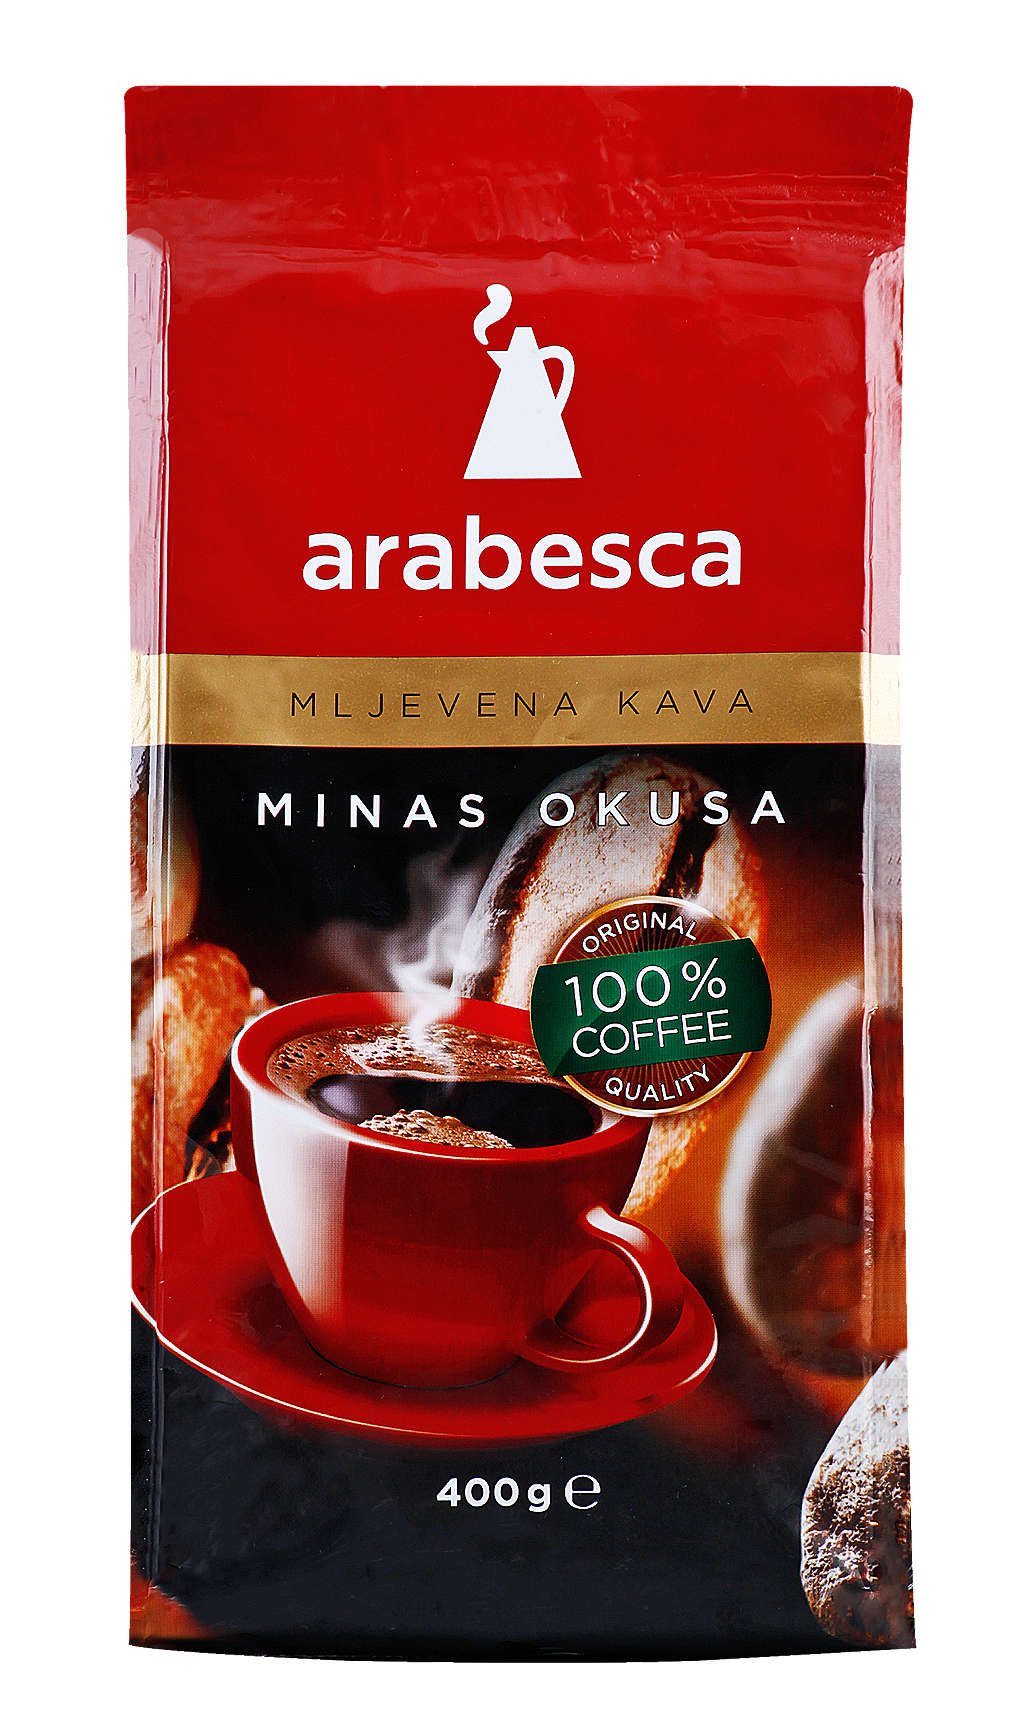 Fotografija ponude Arabesca Mljevena kava